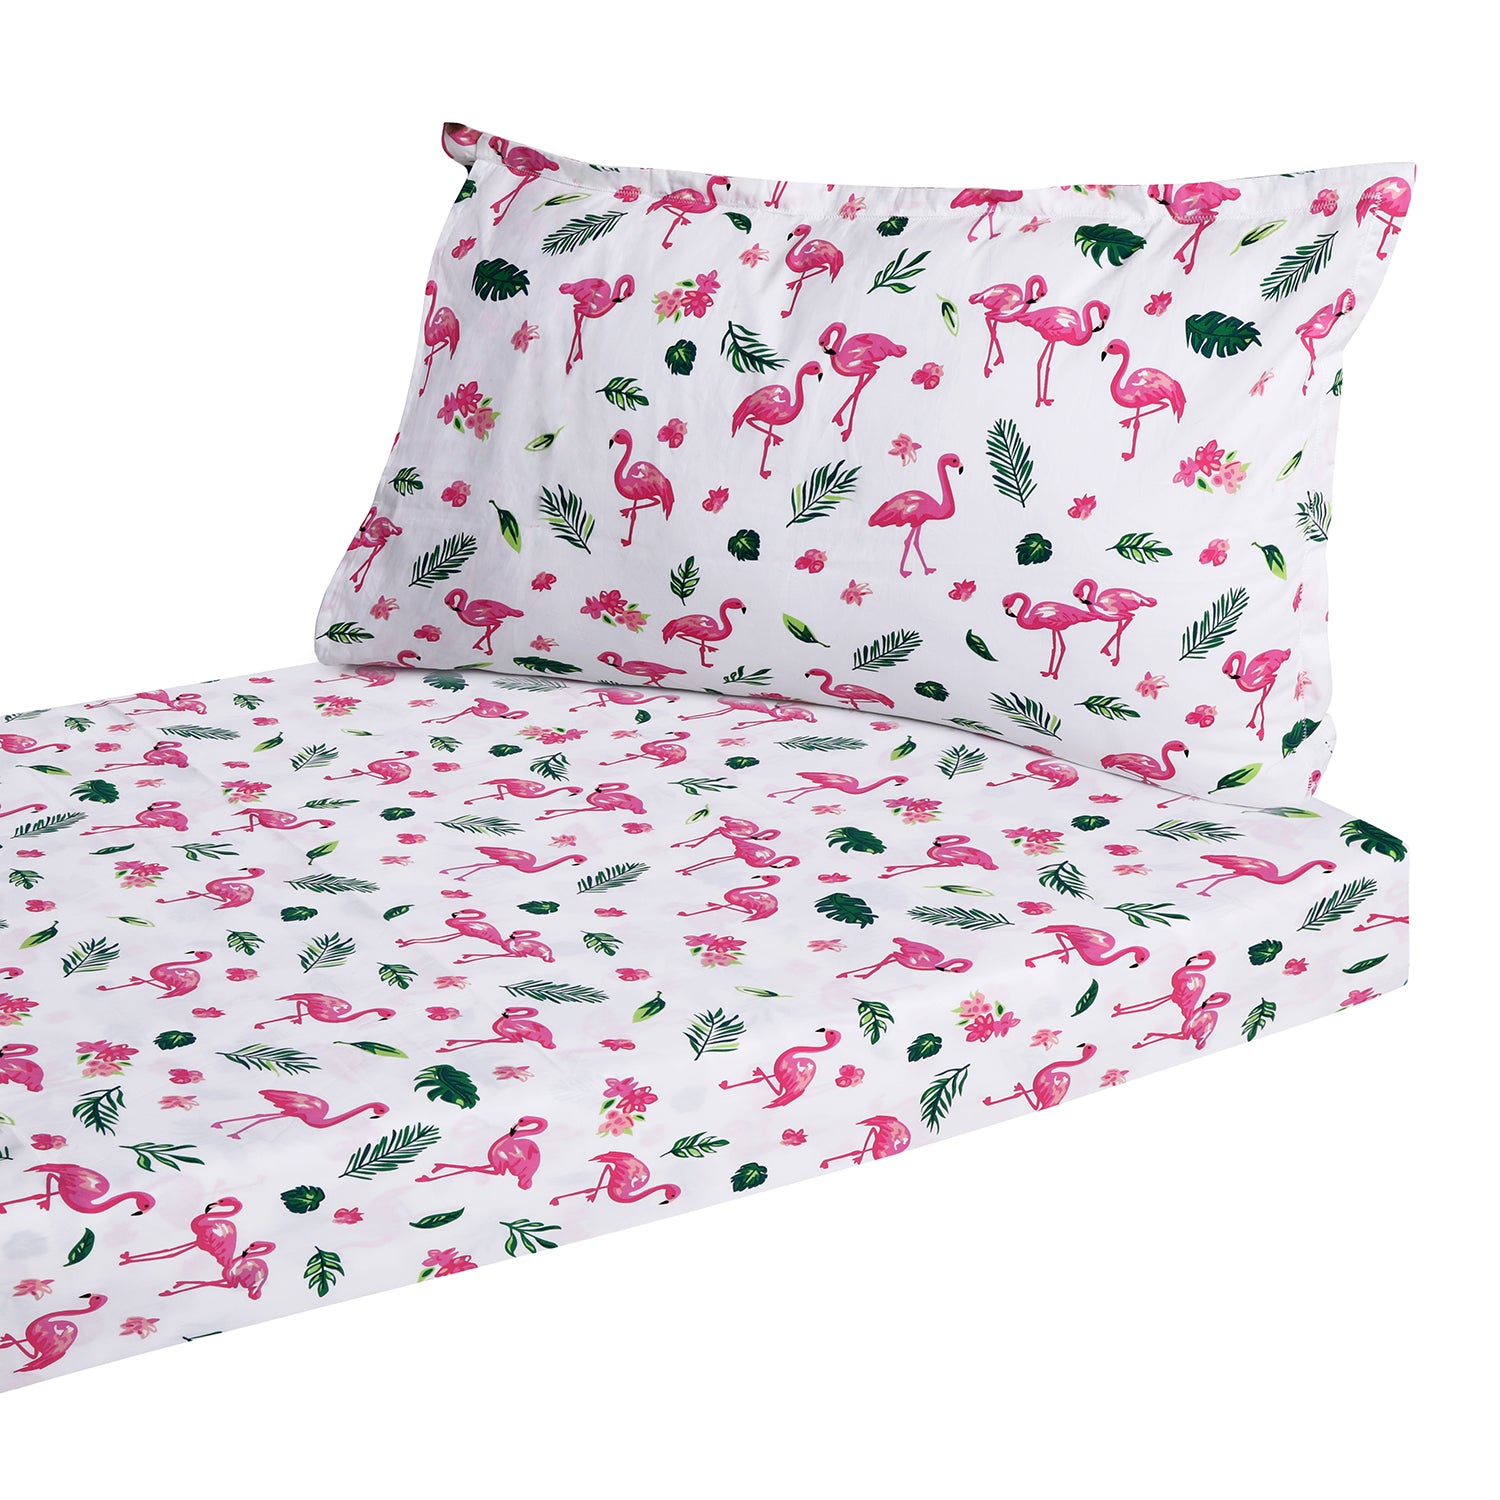 Bedsheet Set - Flamingo Bedsheet, Single/Double Bed Sizes Available